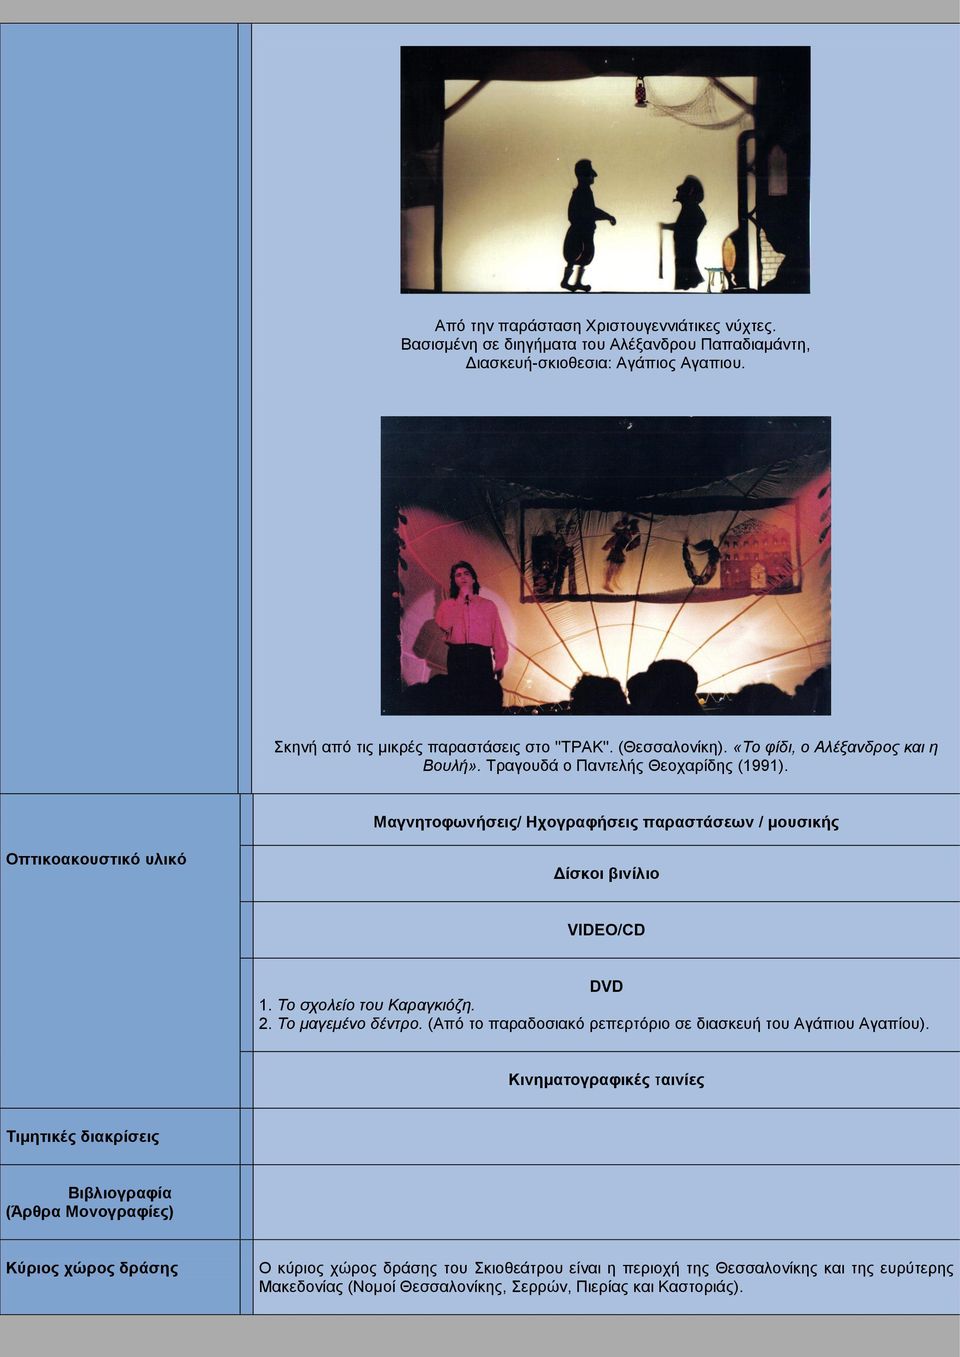 Μαγνητοφωνήσεις/ Ηχογραφήσεις παραστάσεων / μουσικής Οπτικοακουστικό υλικό Δίσκοι βινίλιο VIDEO/CD DVD 1. Το σχολείο του Καραγκιόζη. 2. Το μαγεμένο δέντρο.